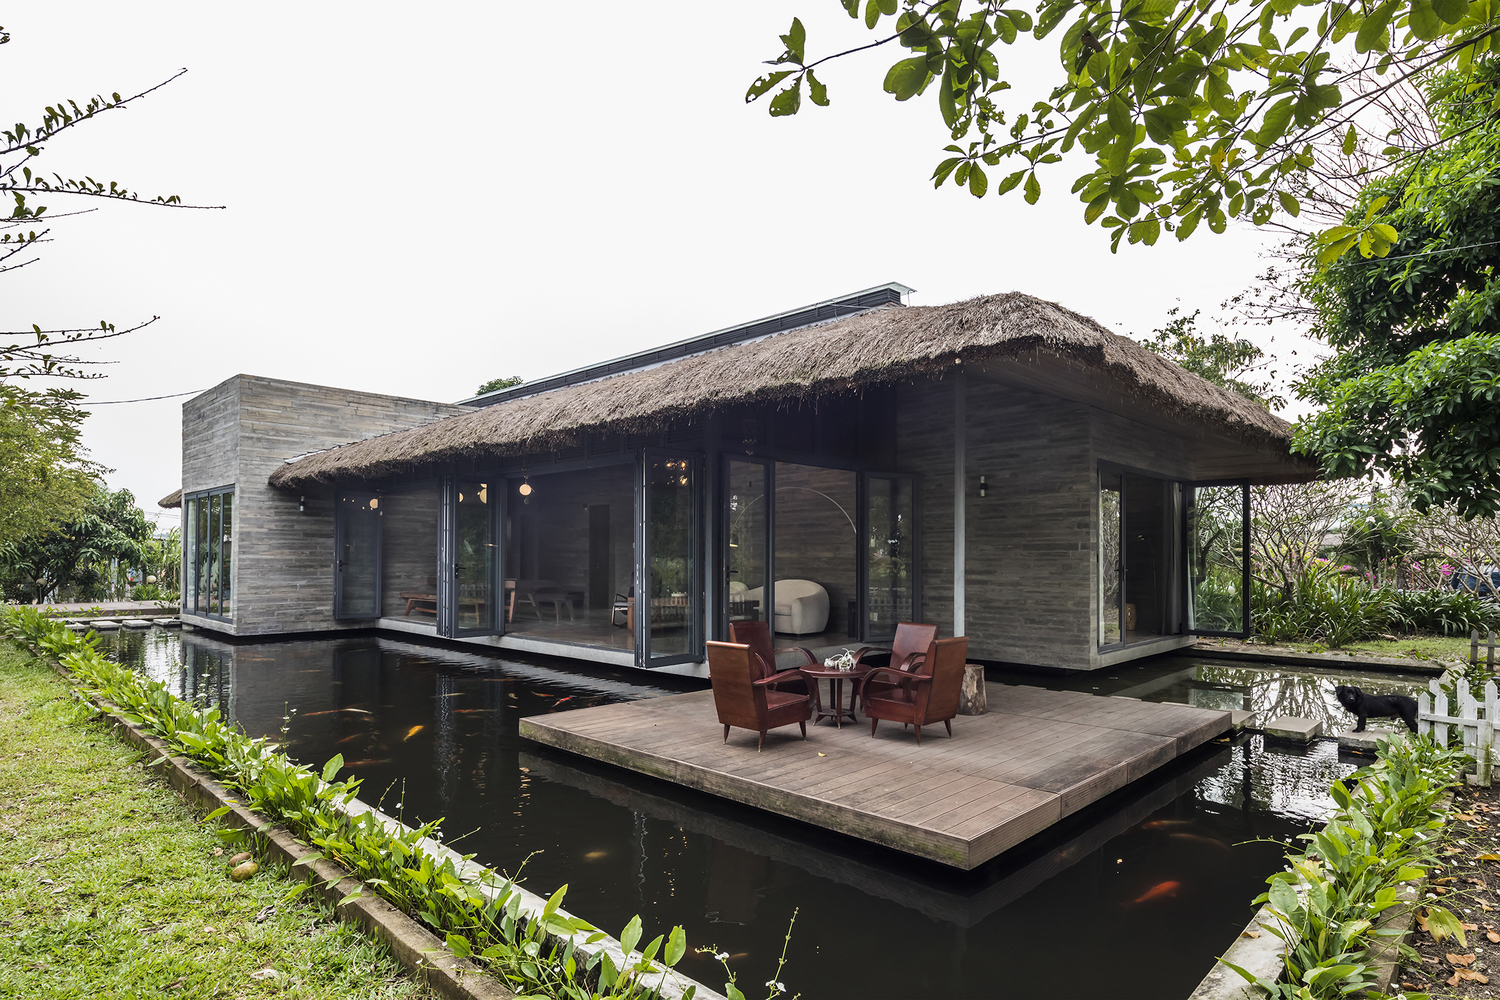 Am House là biệt thự nhà vườn được xây dựng trên khu đất rộng đến 3500m² tại huyện Cần Giuộc, tỉnh Long An do 3 kiến trúc sư trẻ tuổi cùng thiết kế.